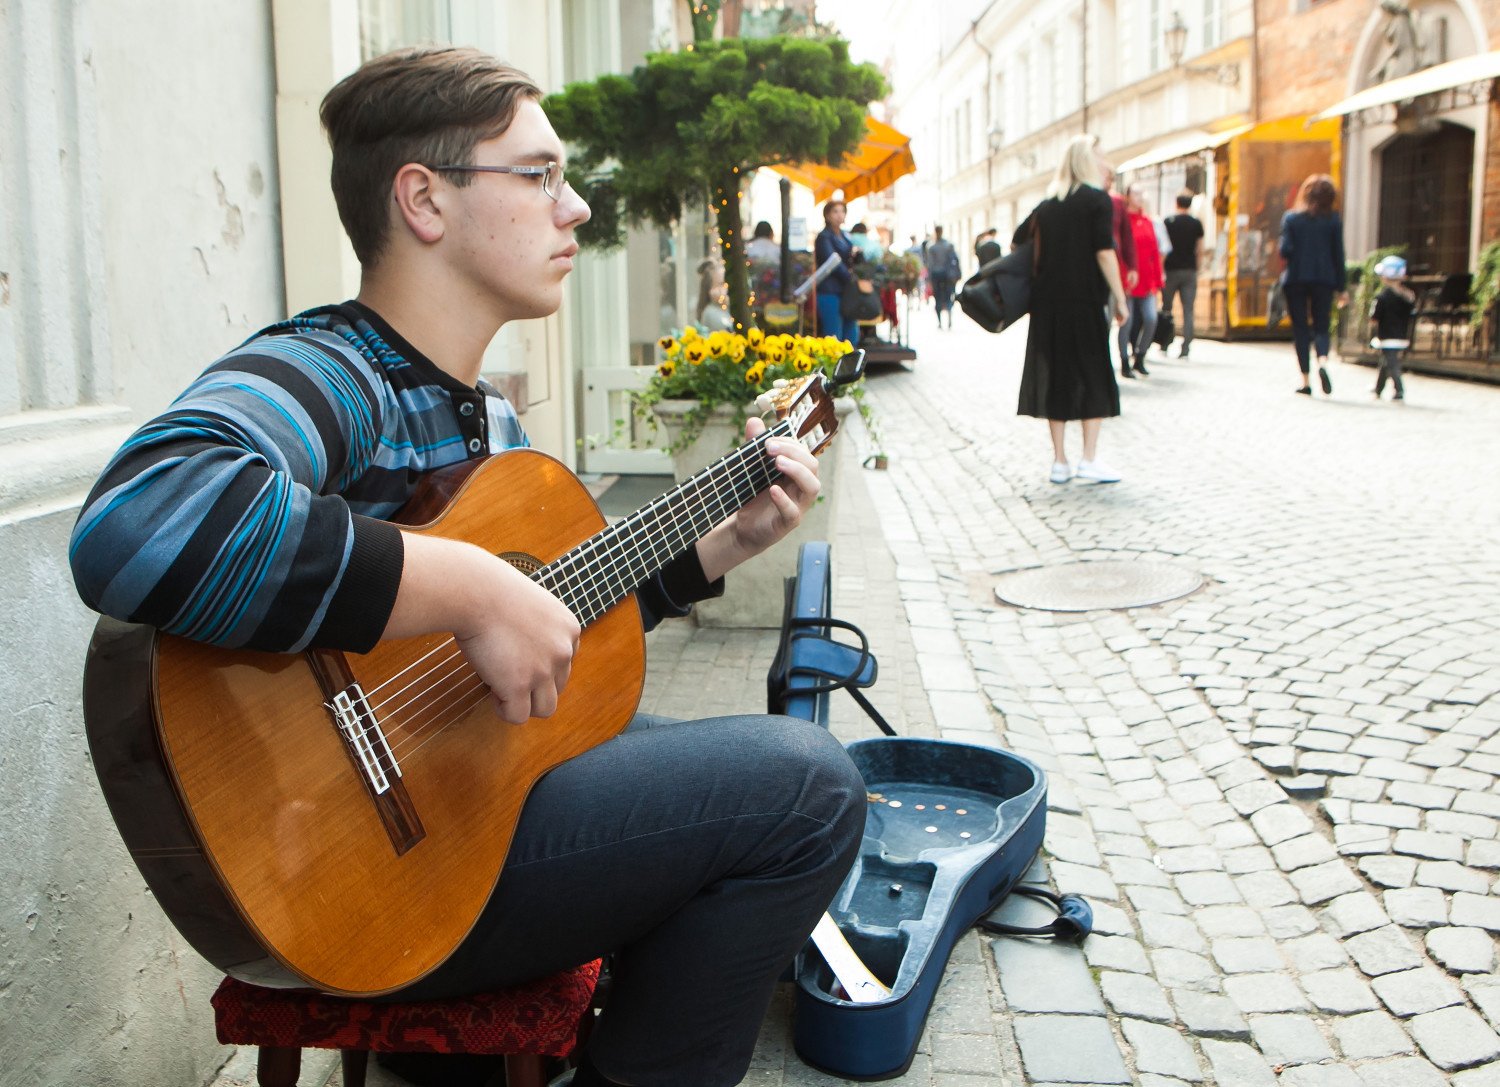 Lietuvoje – tradicinė Gatvės muzikos diena